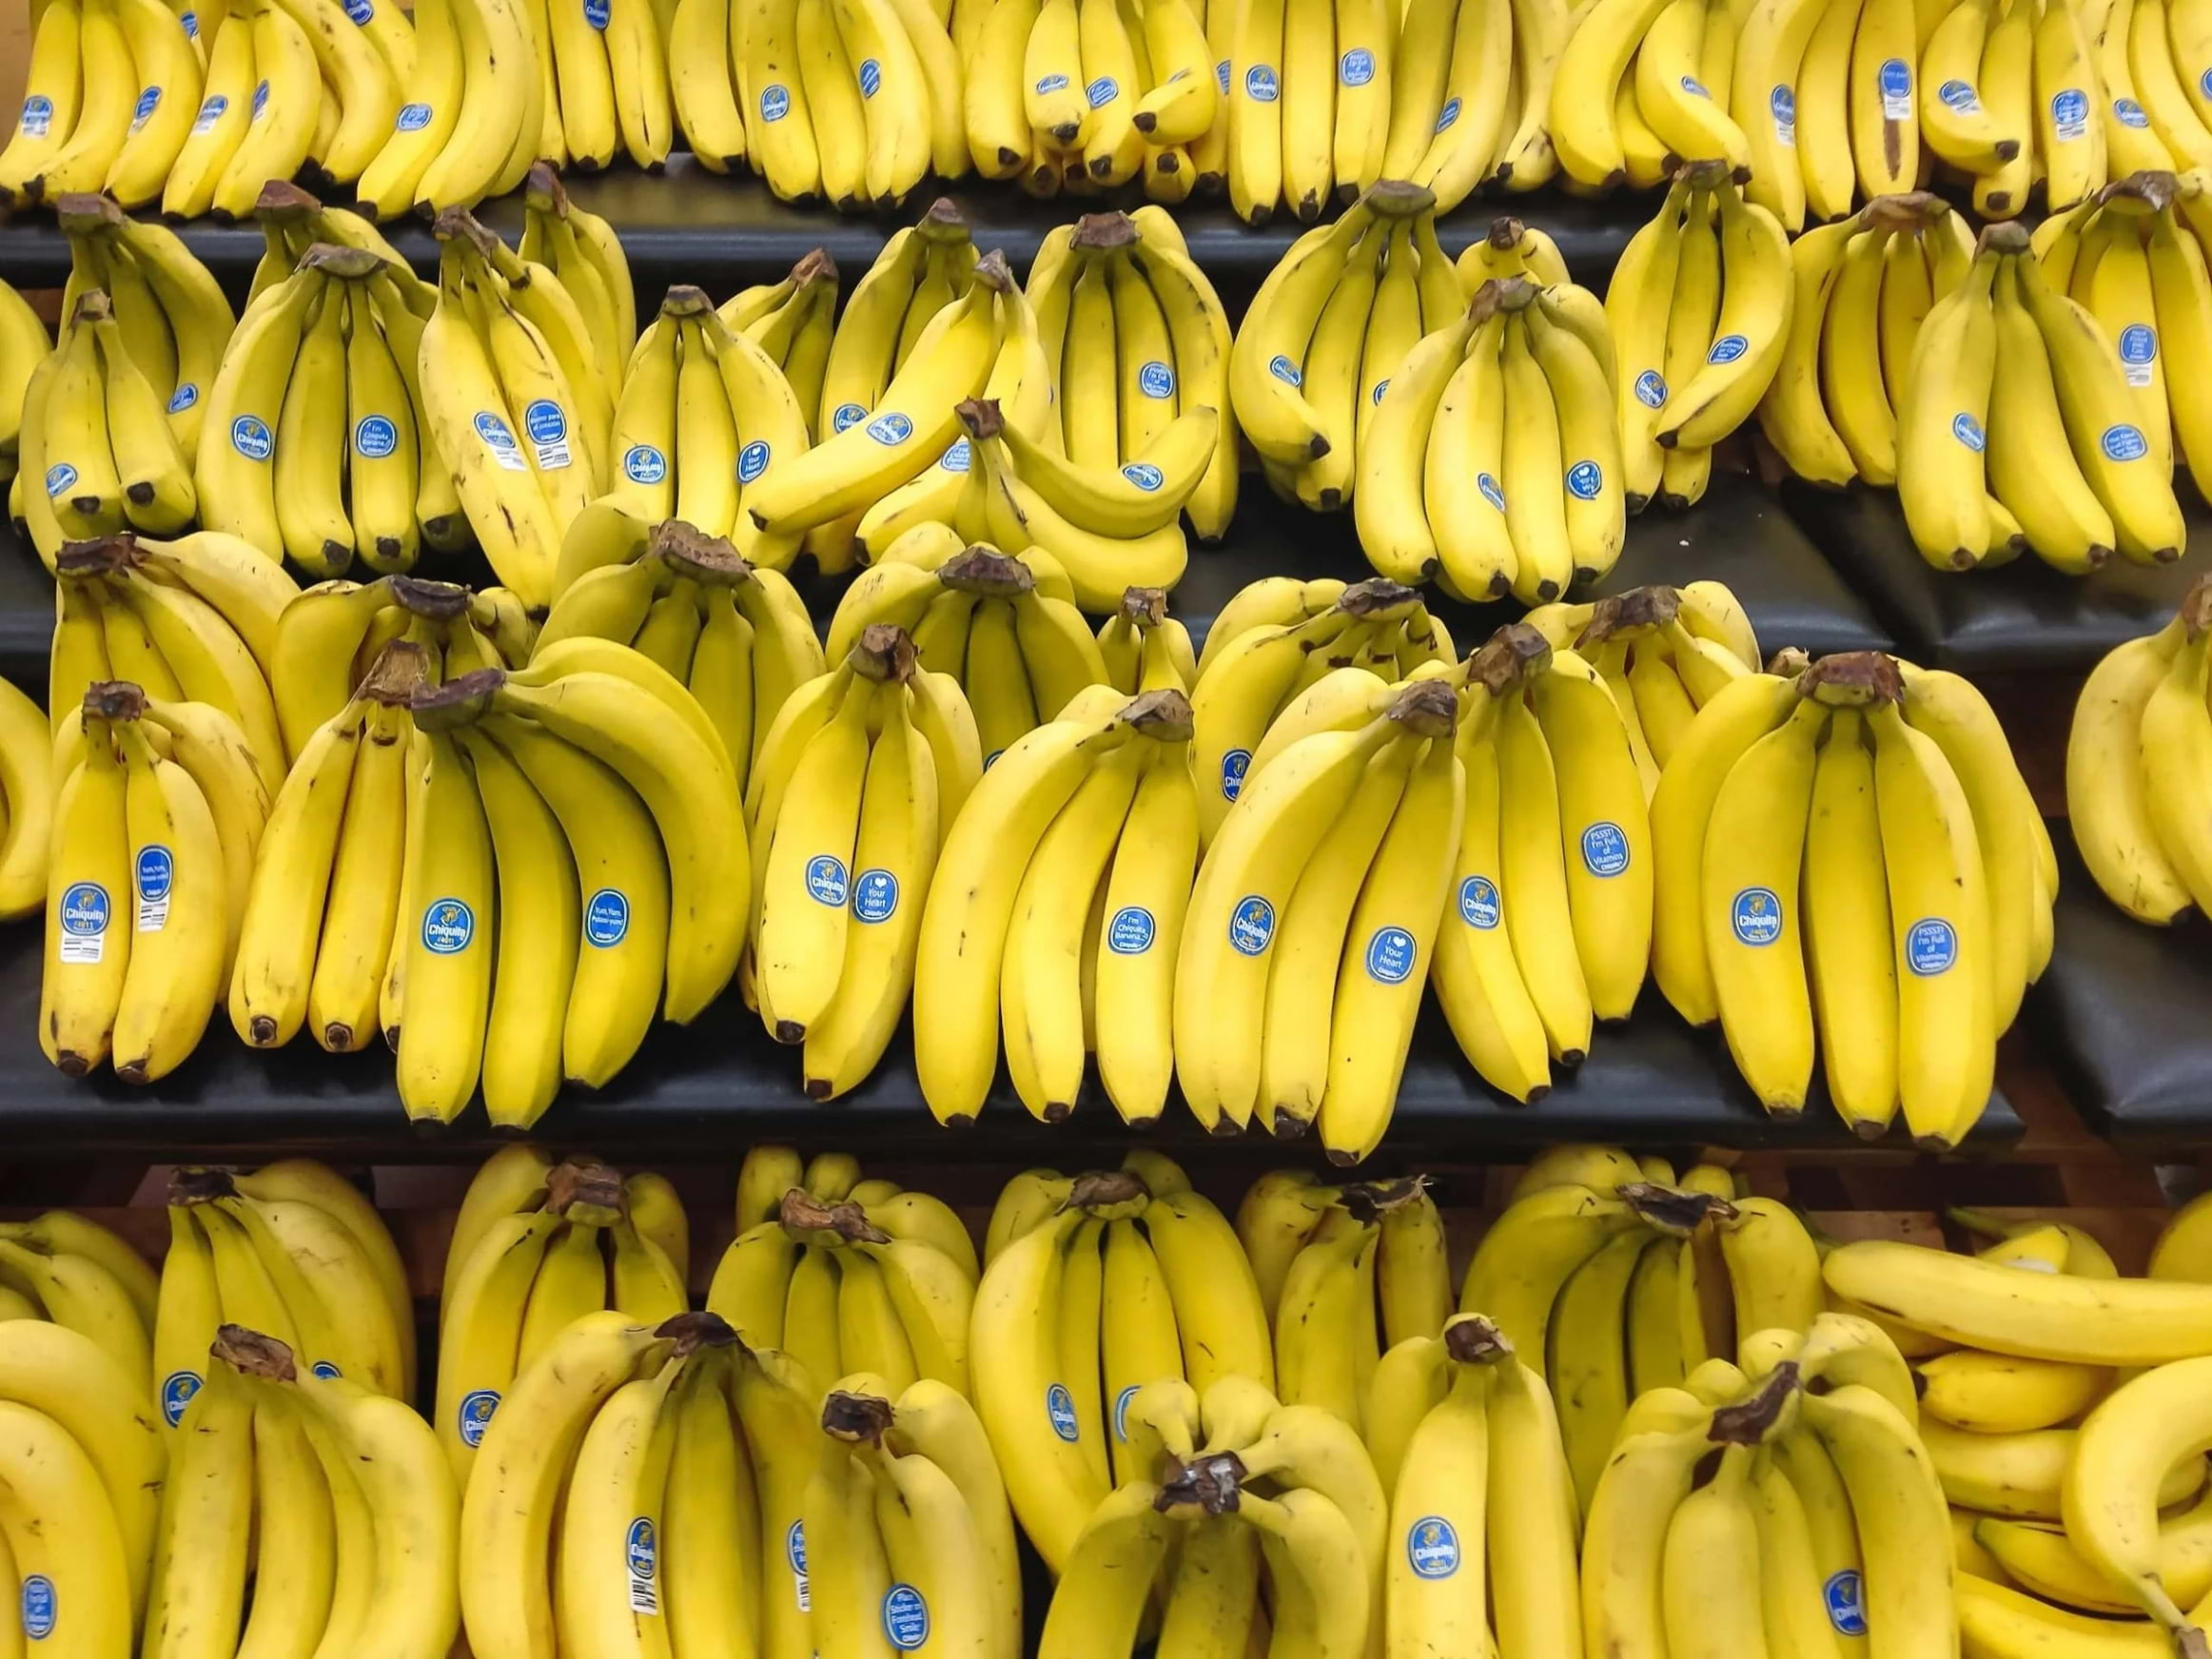 Rscued ska minska matsvinnet med Bananuppropet